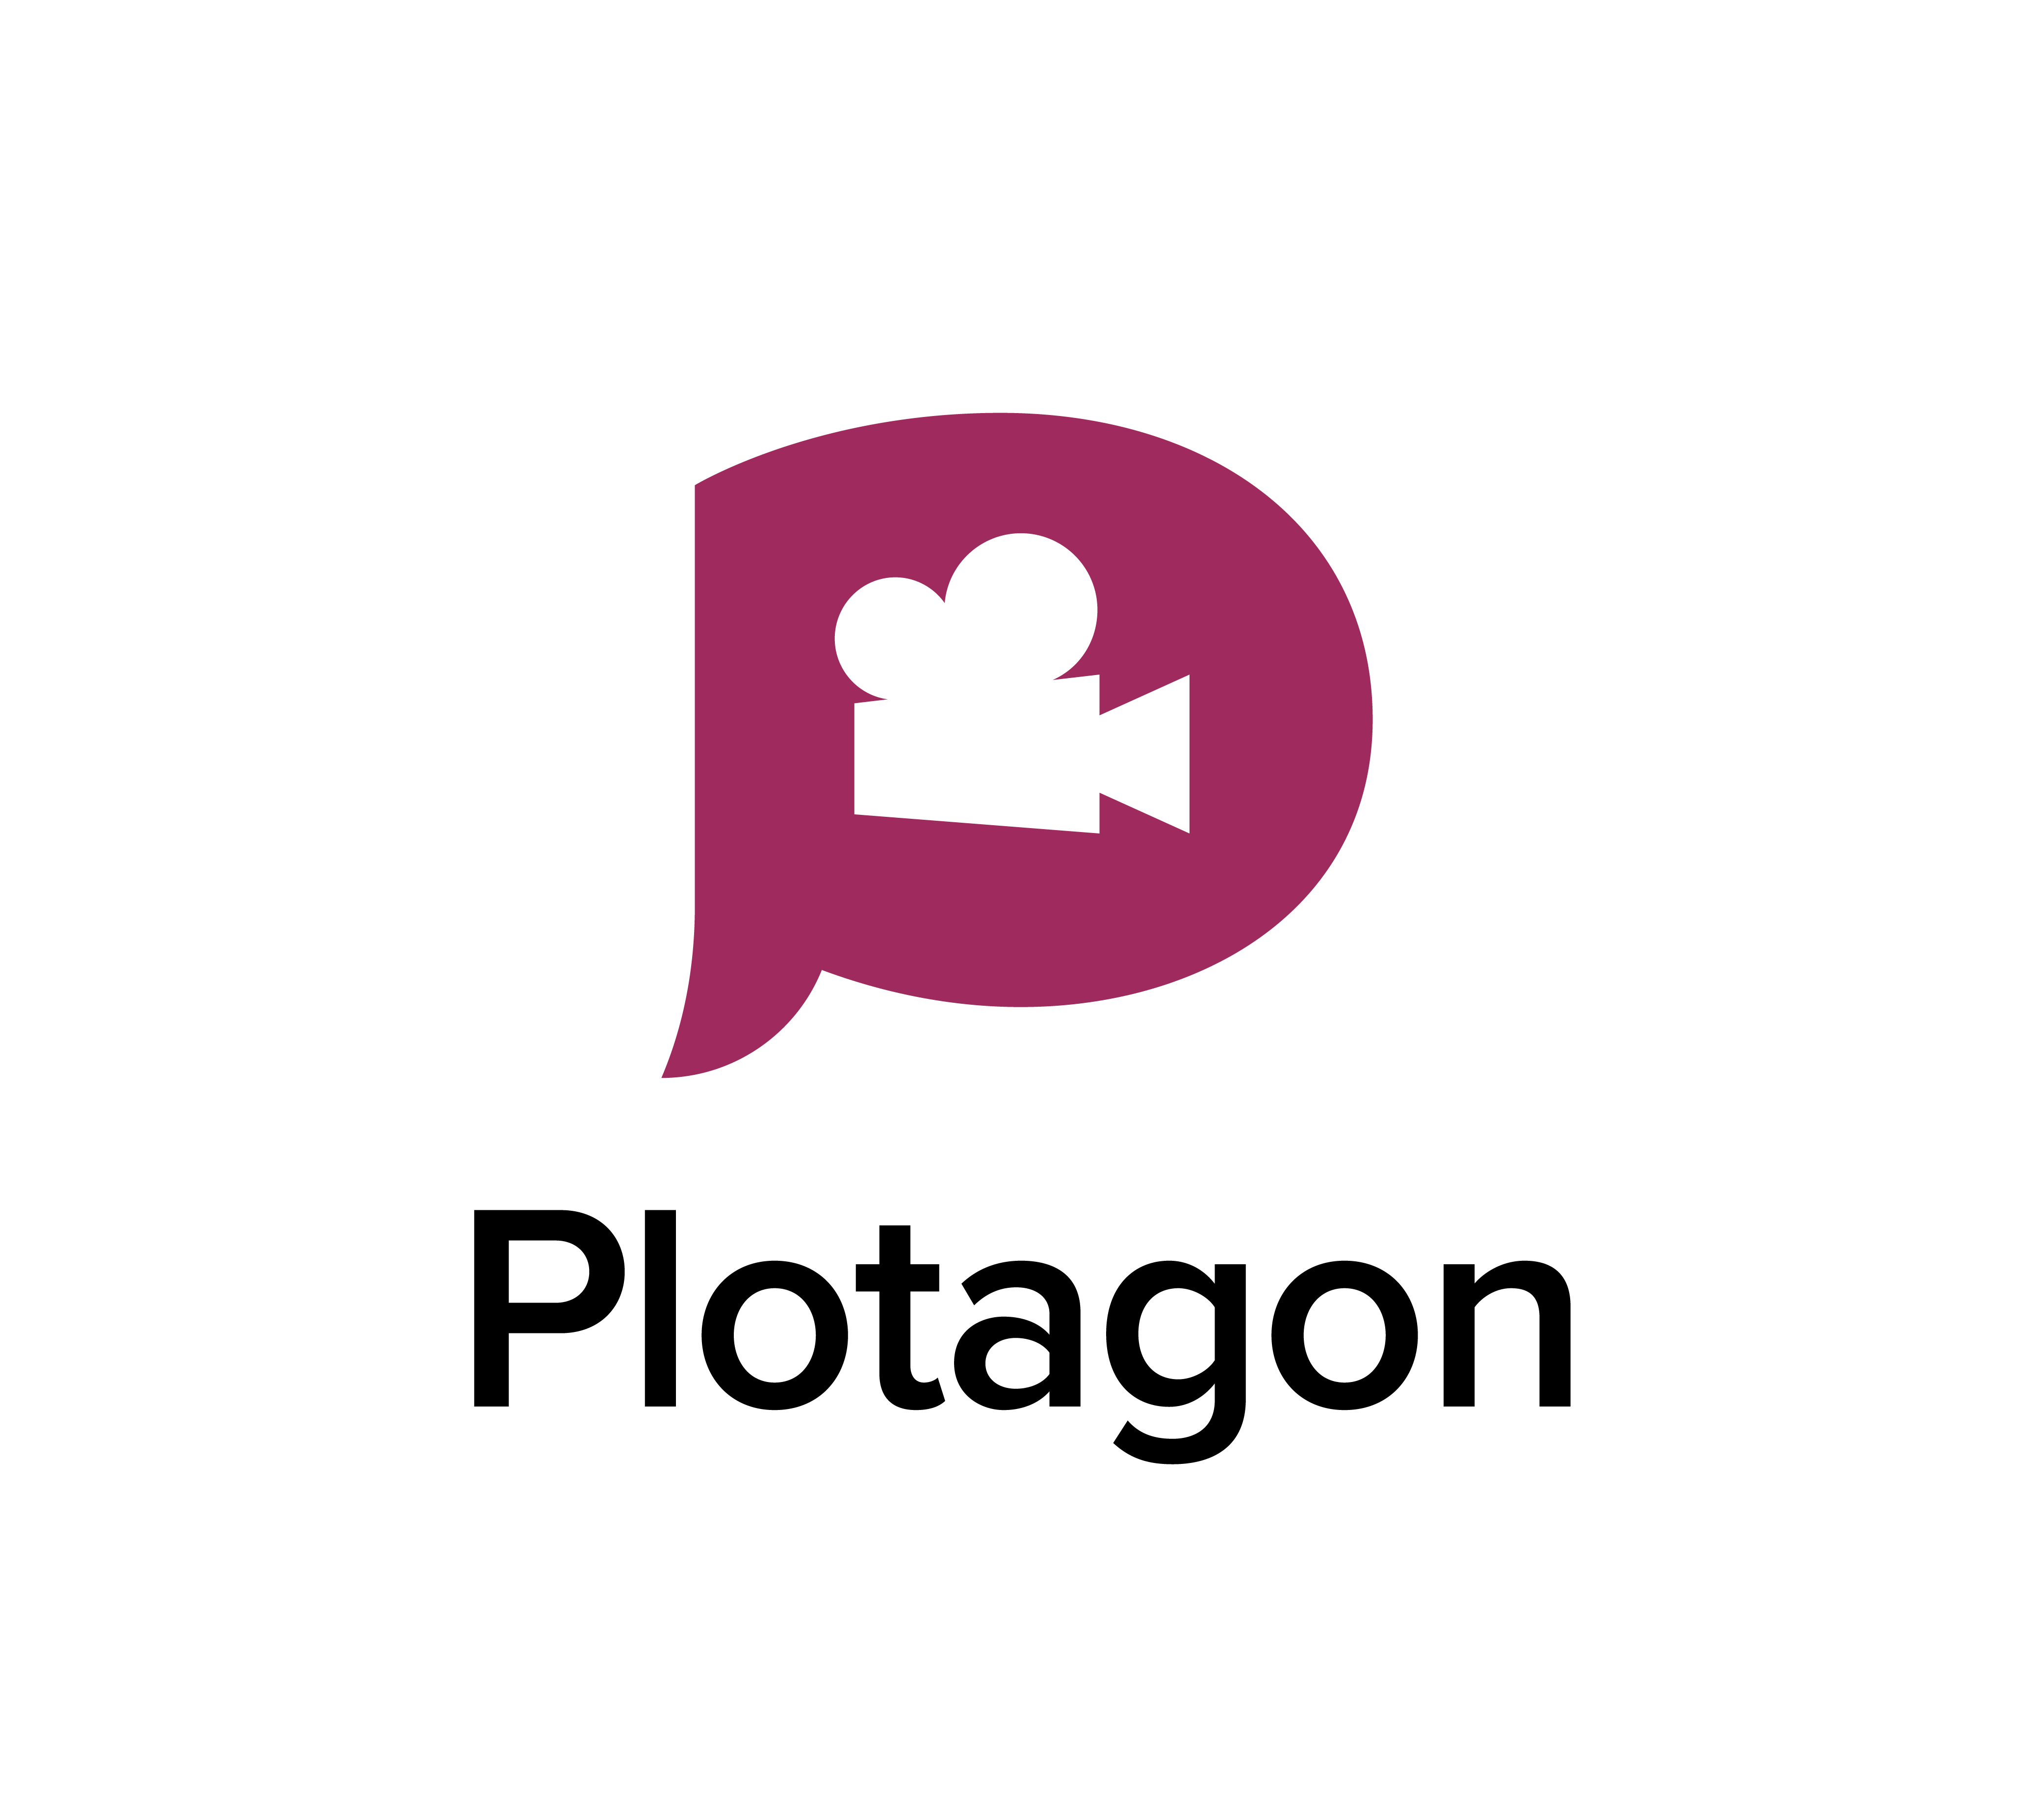 plotagon studio 1.8.0